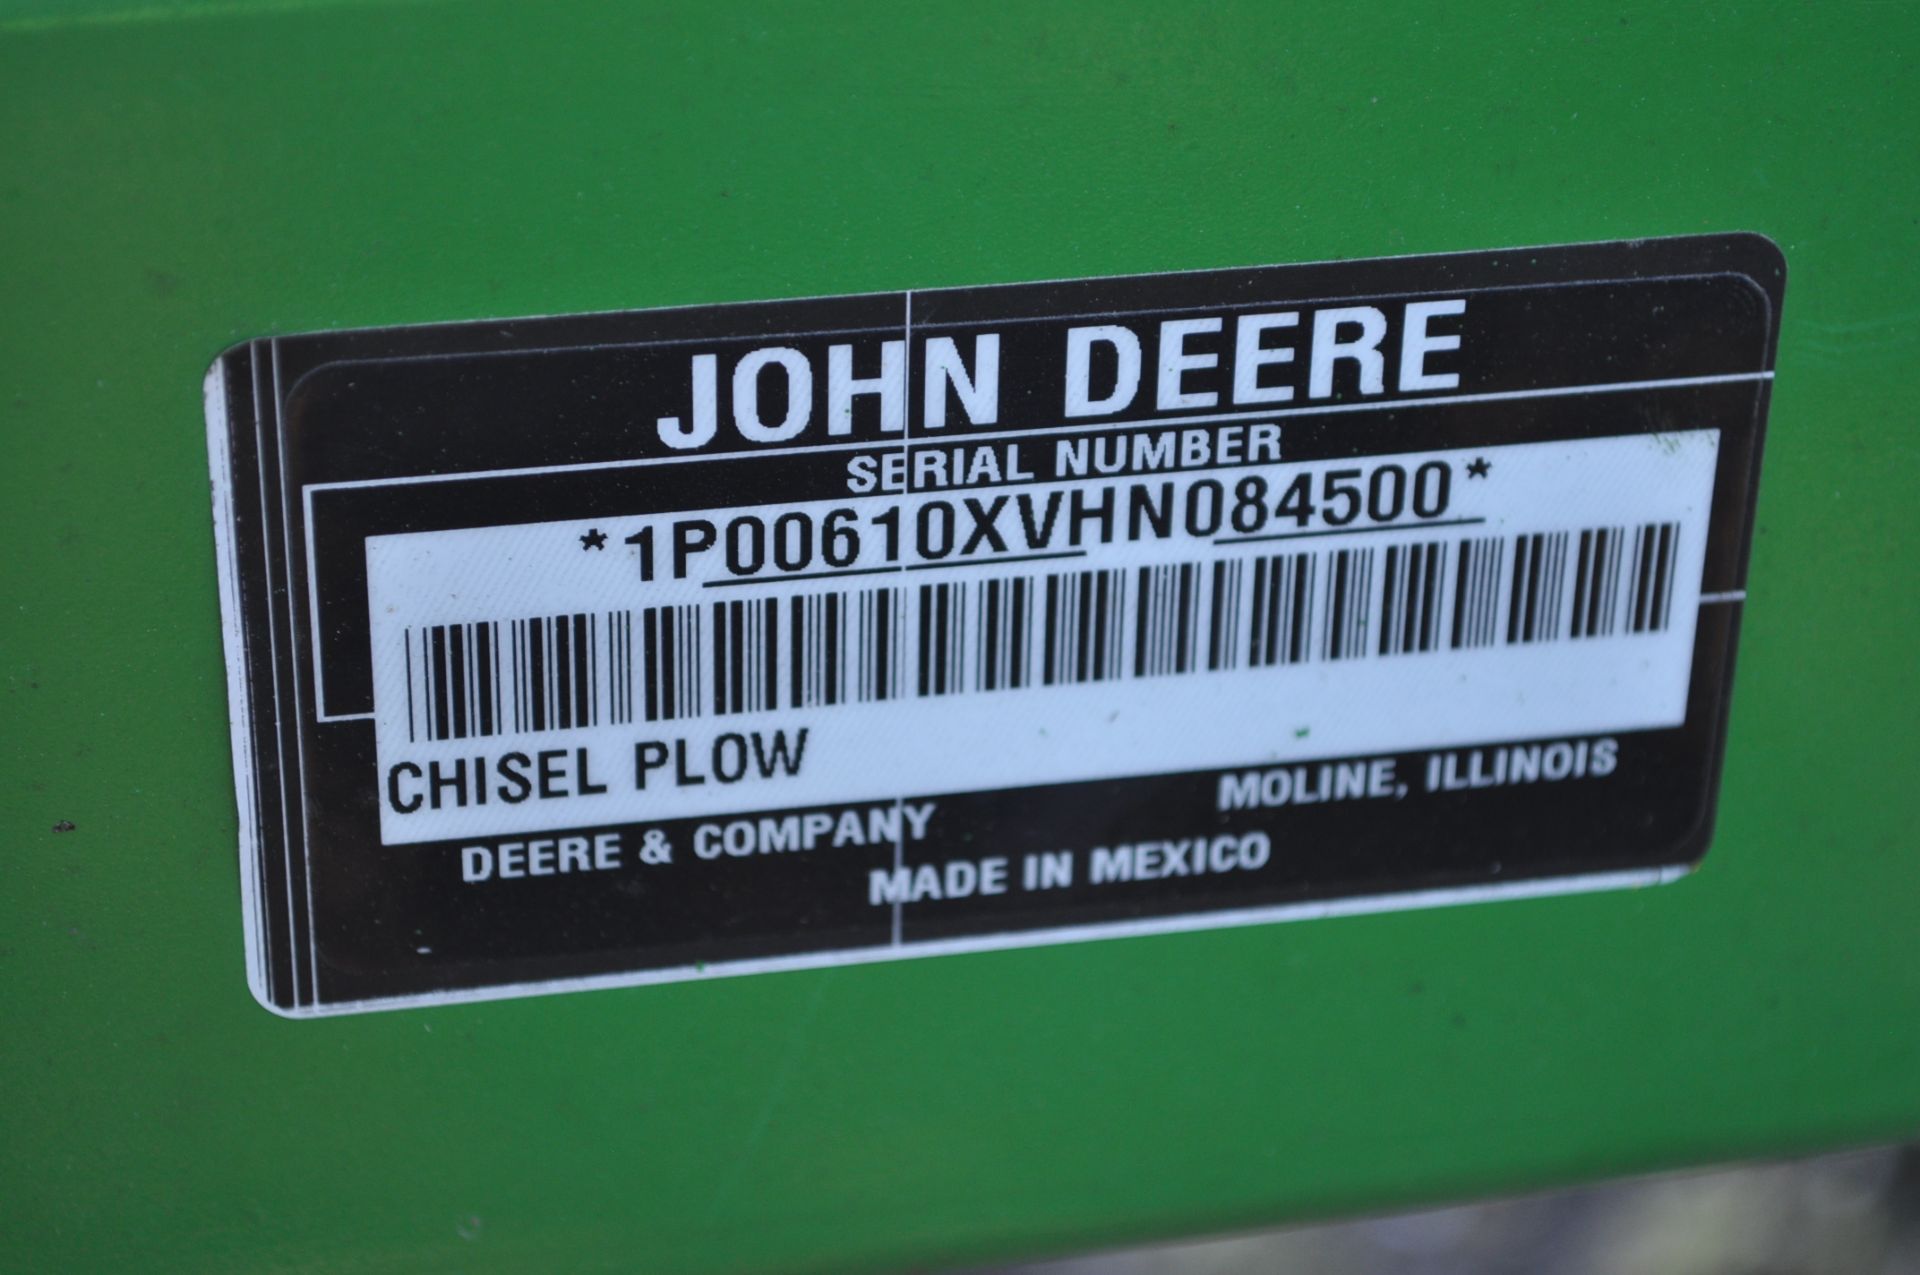 NEW John Deere 610 chisel plow, 3pt, SN XVHN084500 - Image 6 of 6